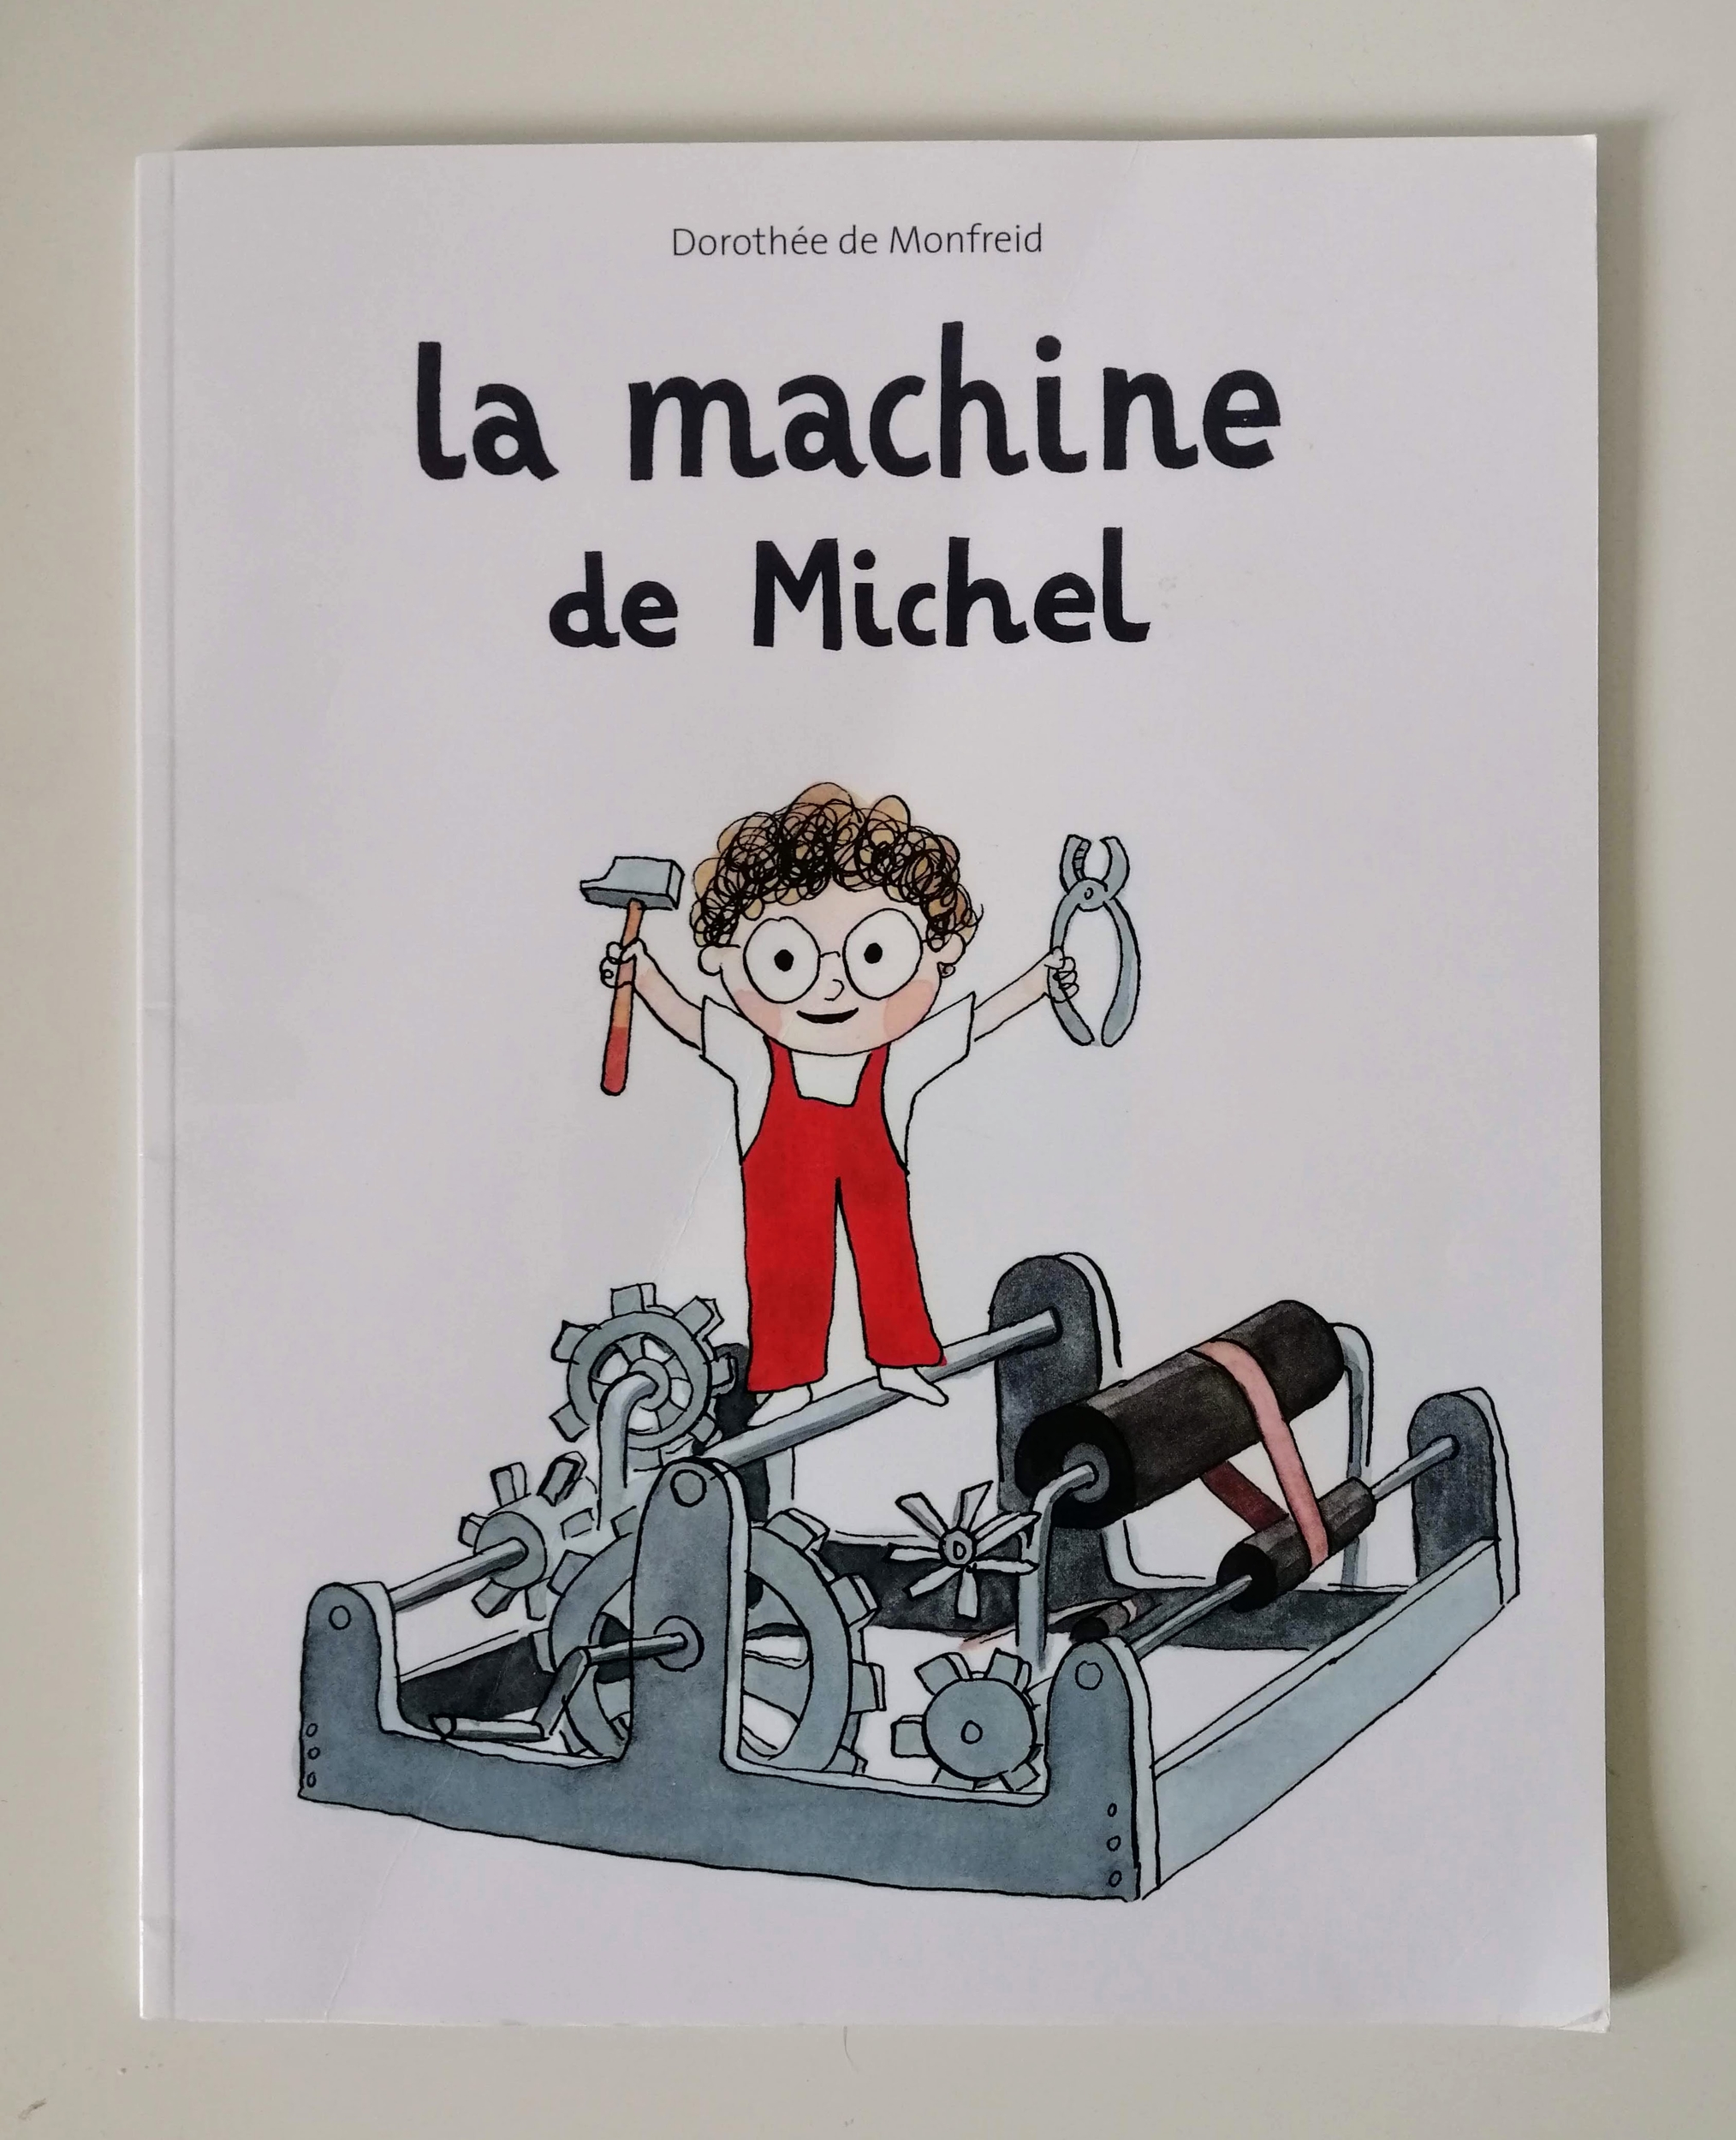 La machine de Michel (Dorothée de Monfreid)